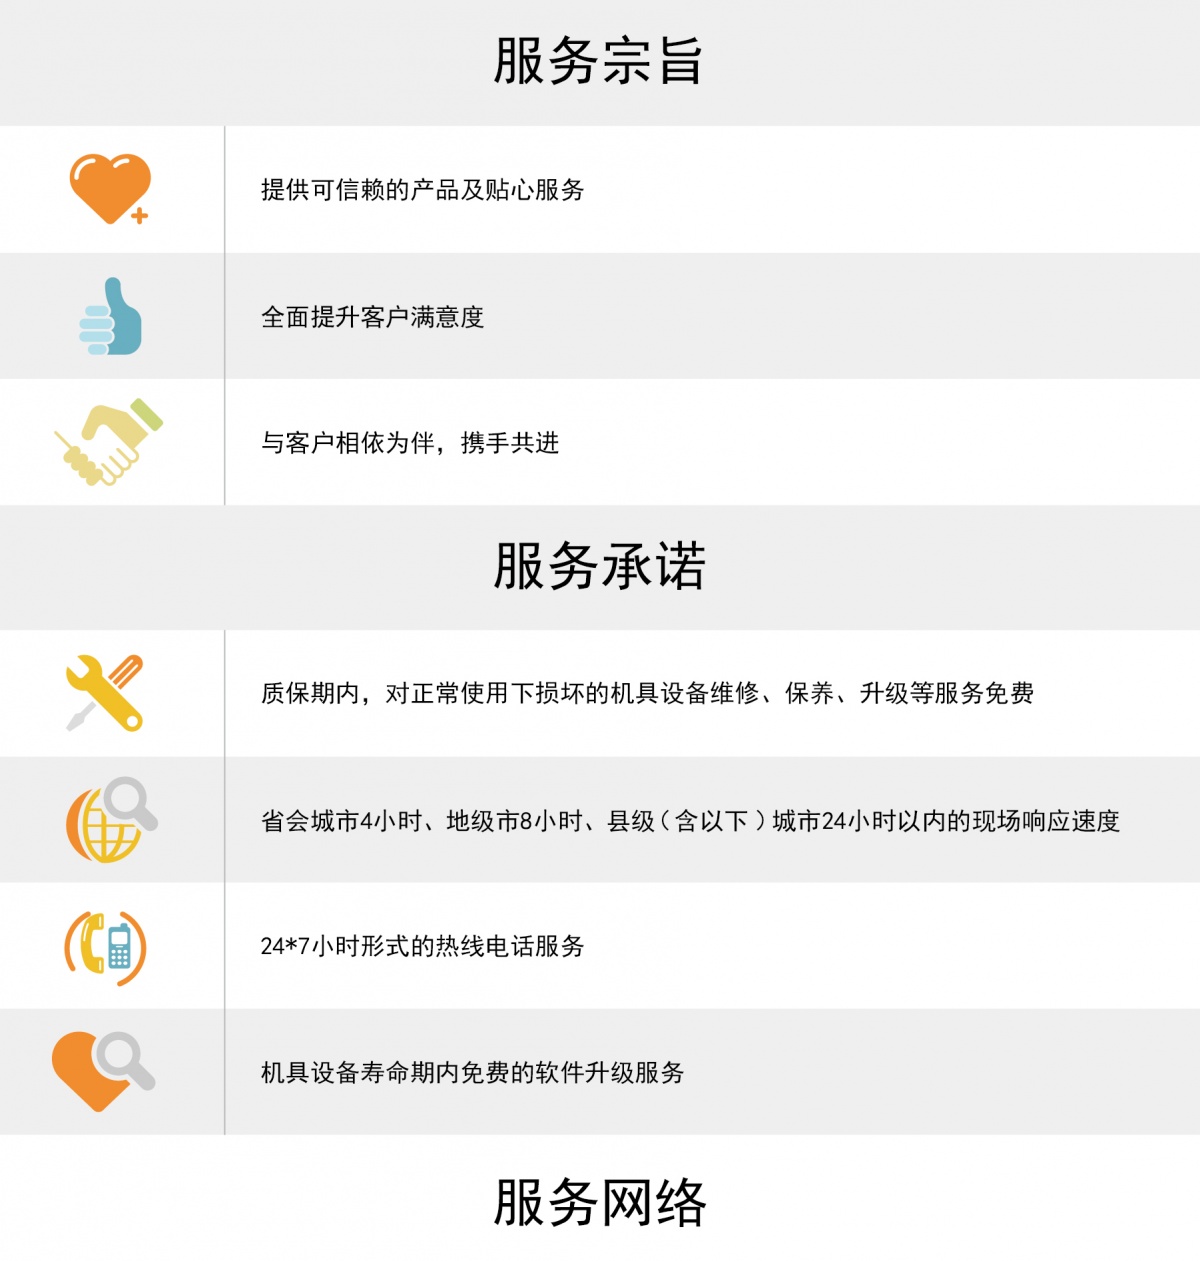 ag尊龙凯时人生就是博·(中国)官网的售后服务-01.jpg